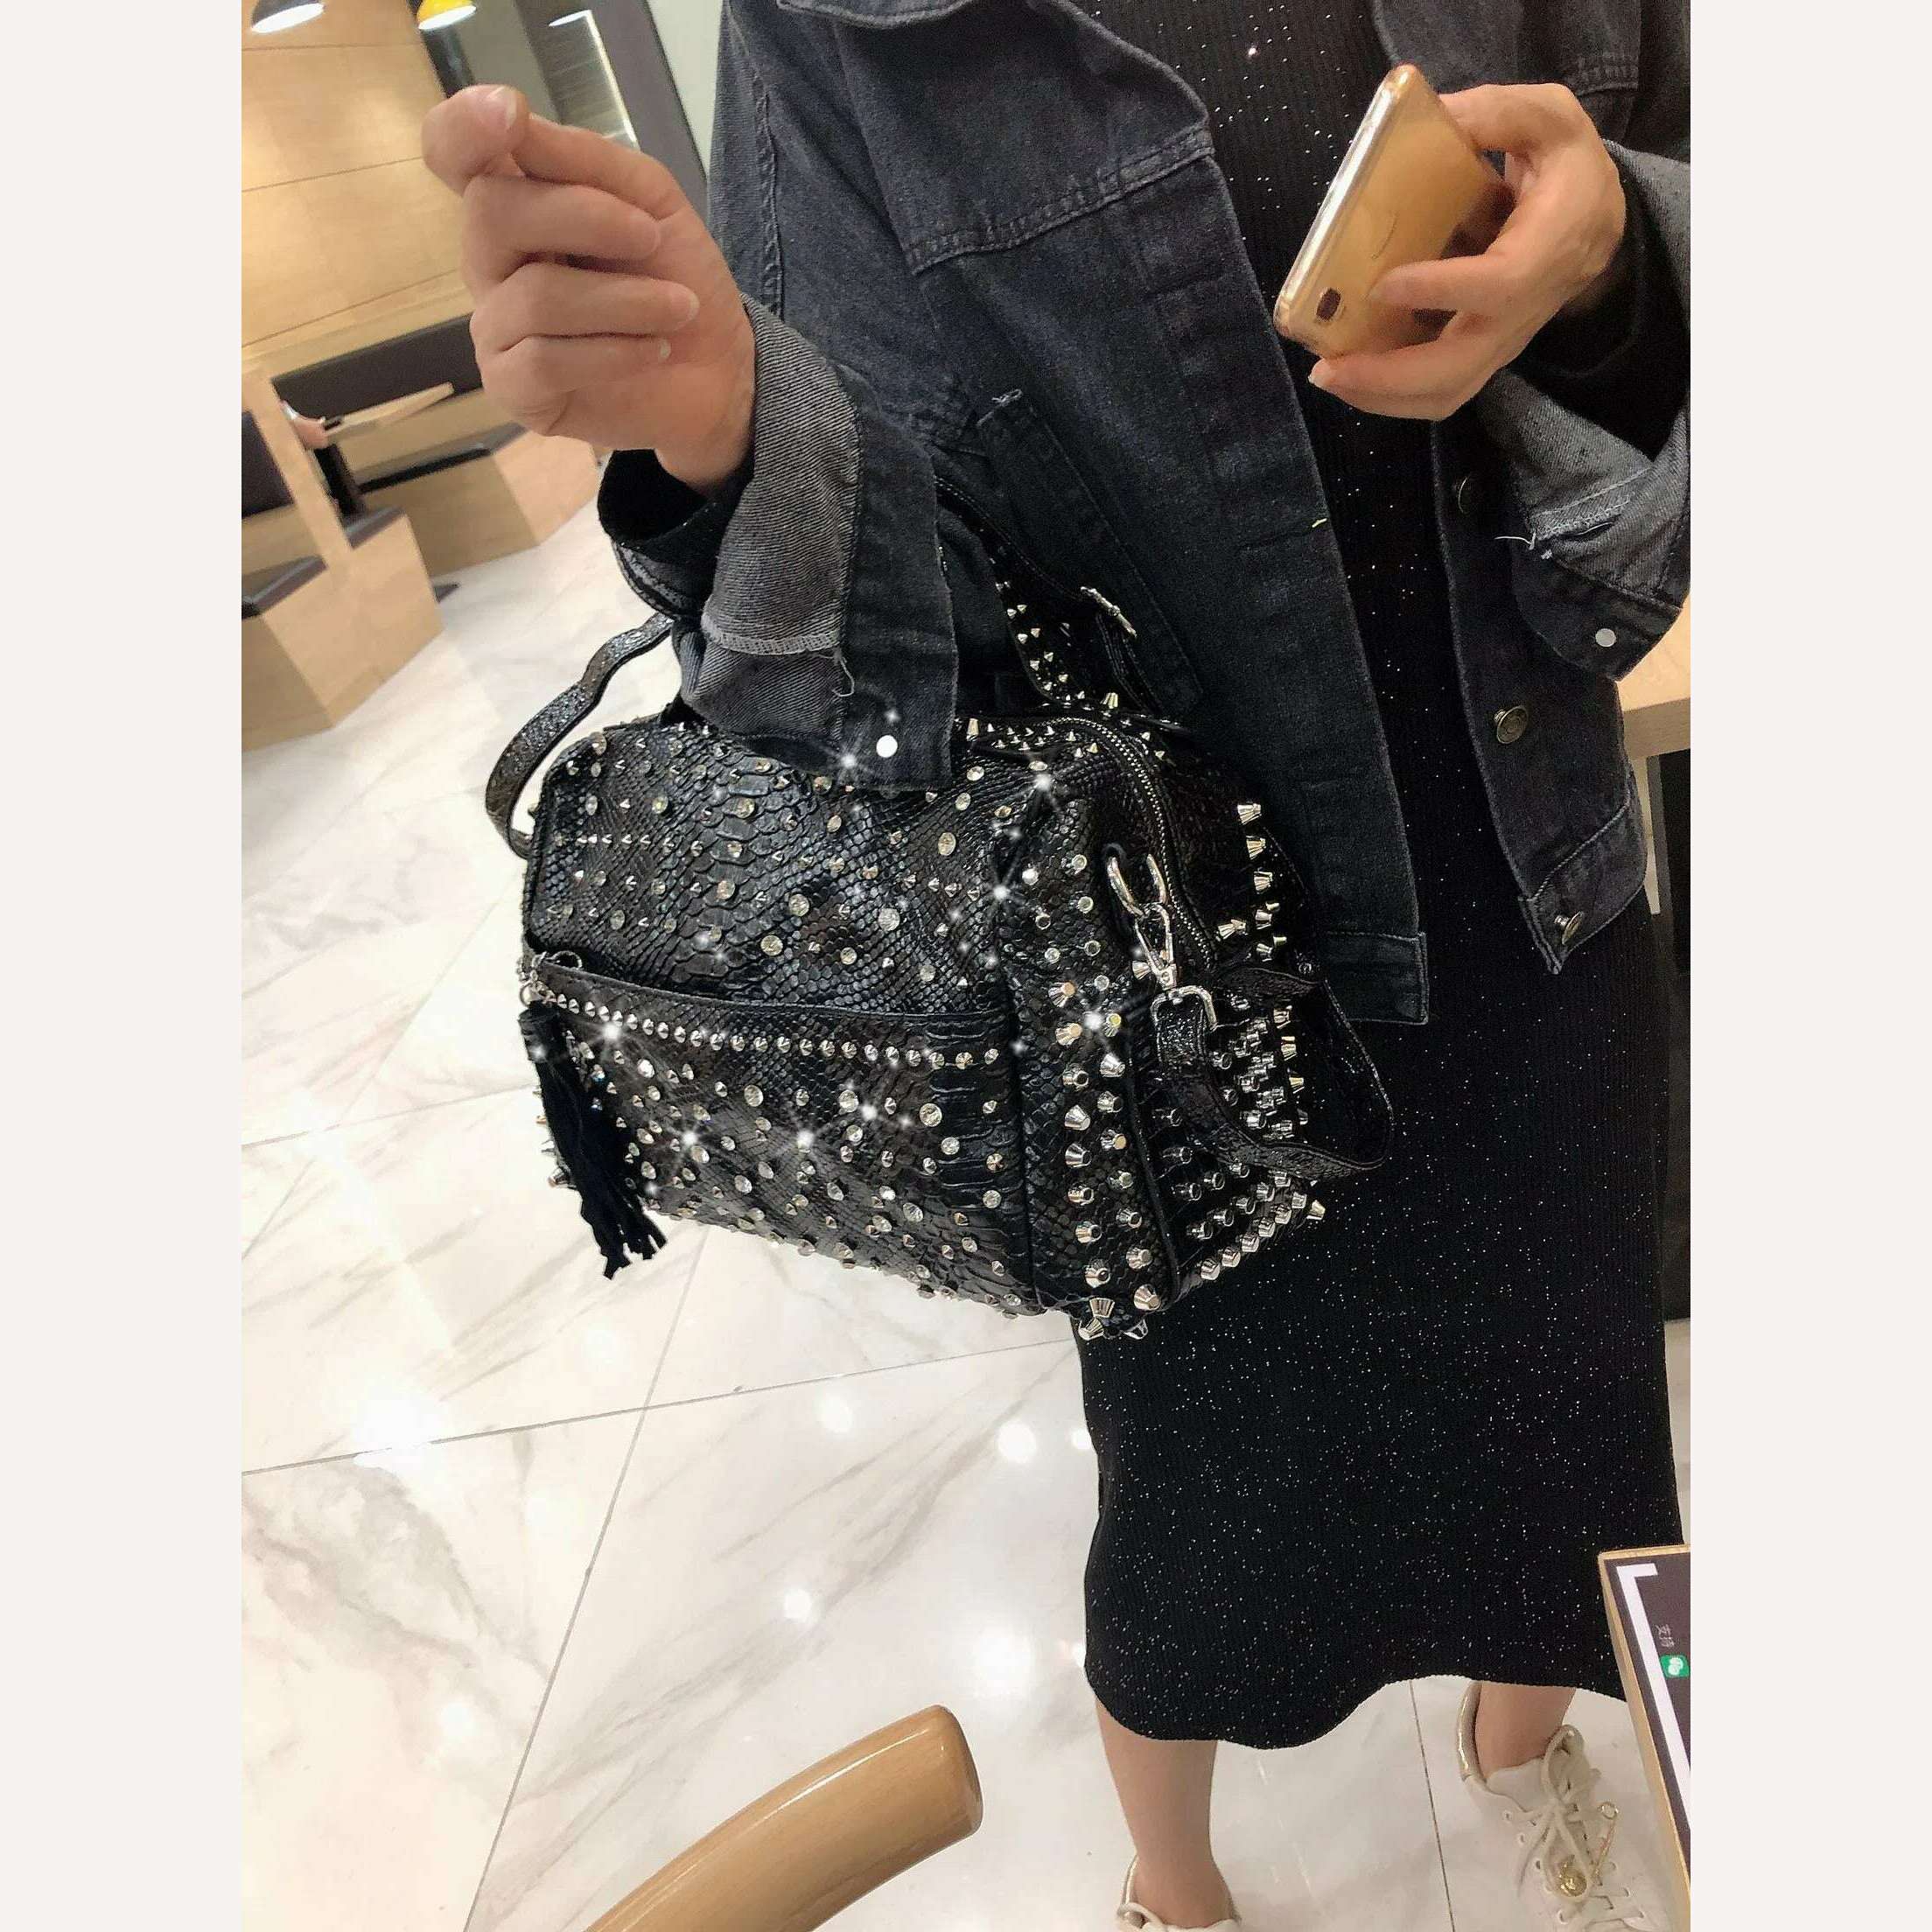 KIMLUD, New trend handbags personality fashion retro leopard rhinestone handbag rivet shoulder bag ladies casual handbag Messenger bag, KIMLUD Women's Clothes